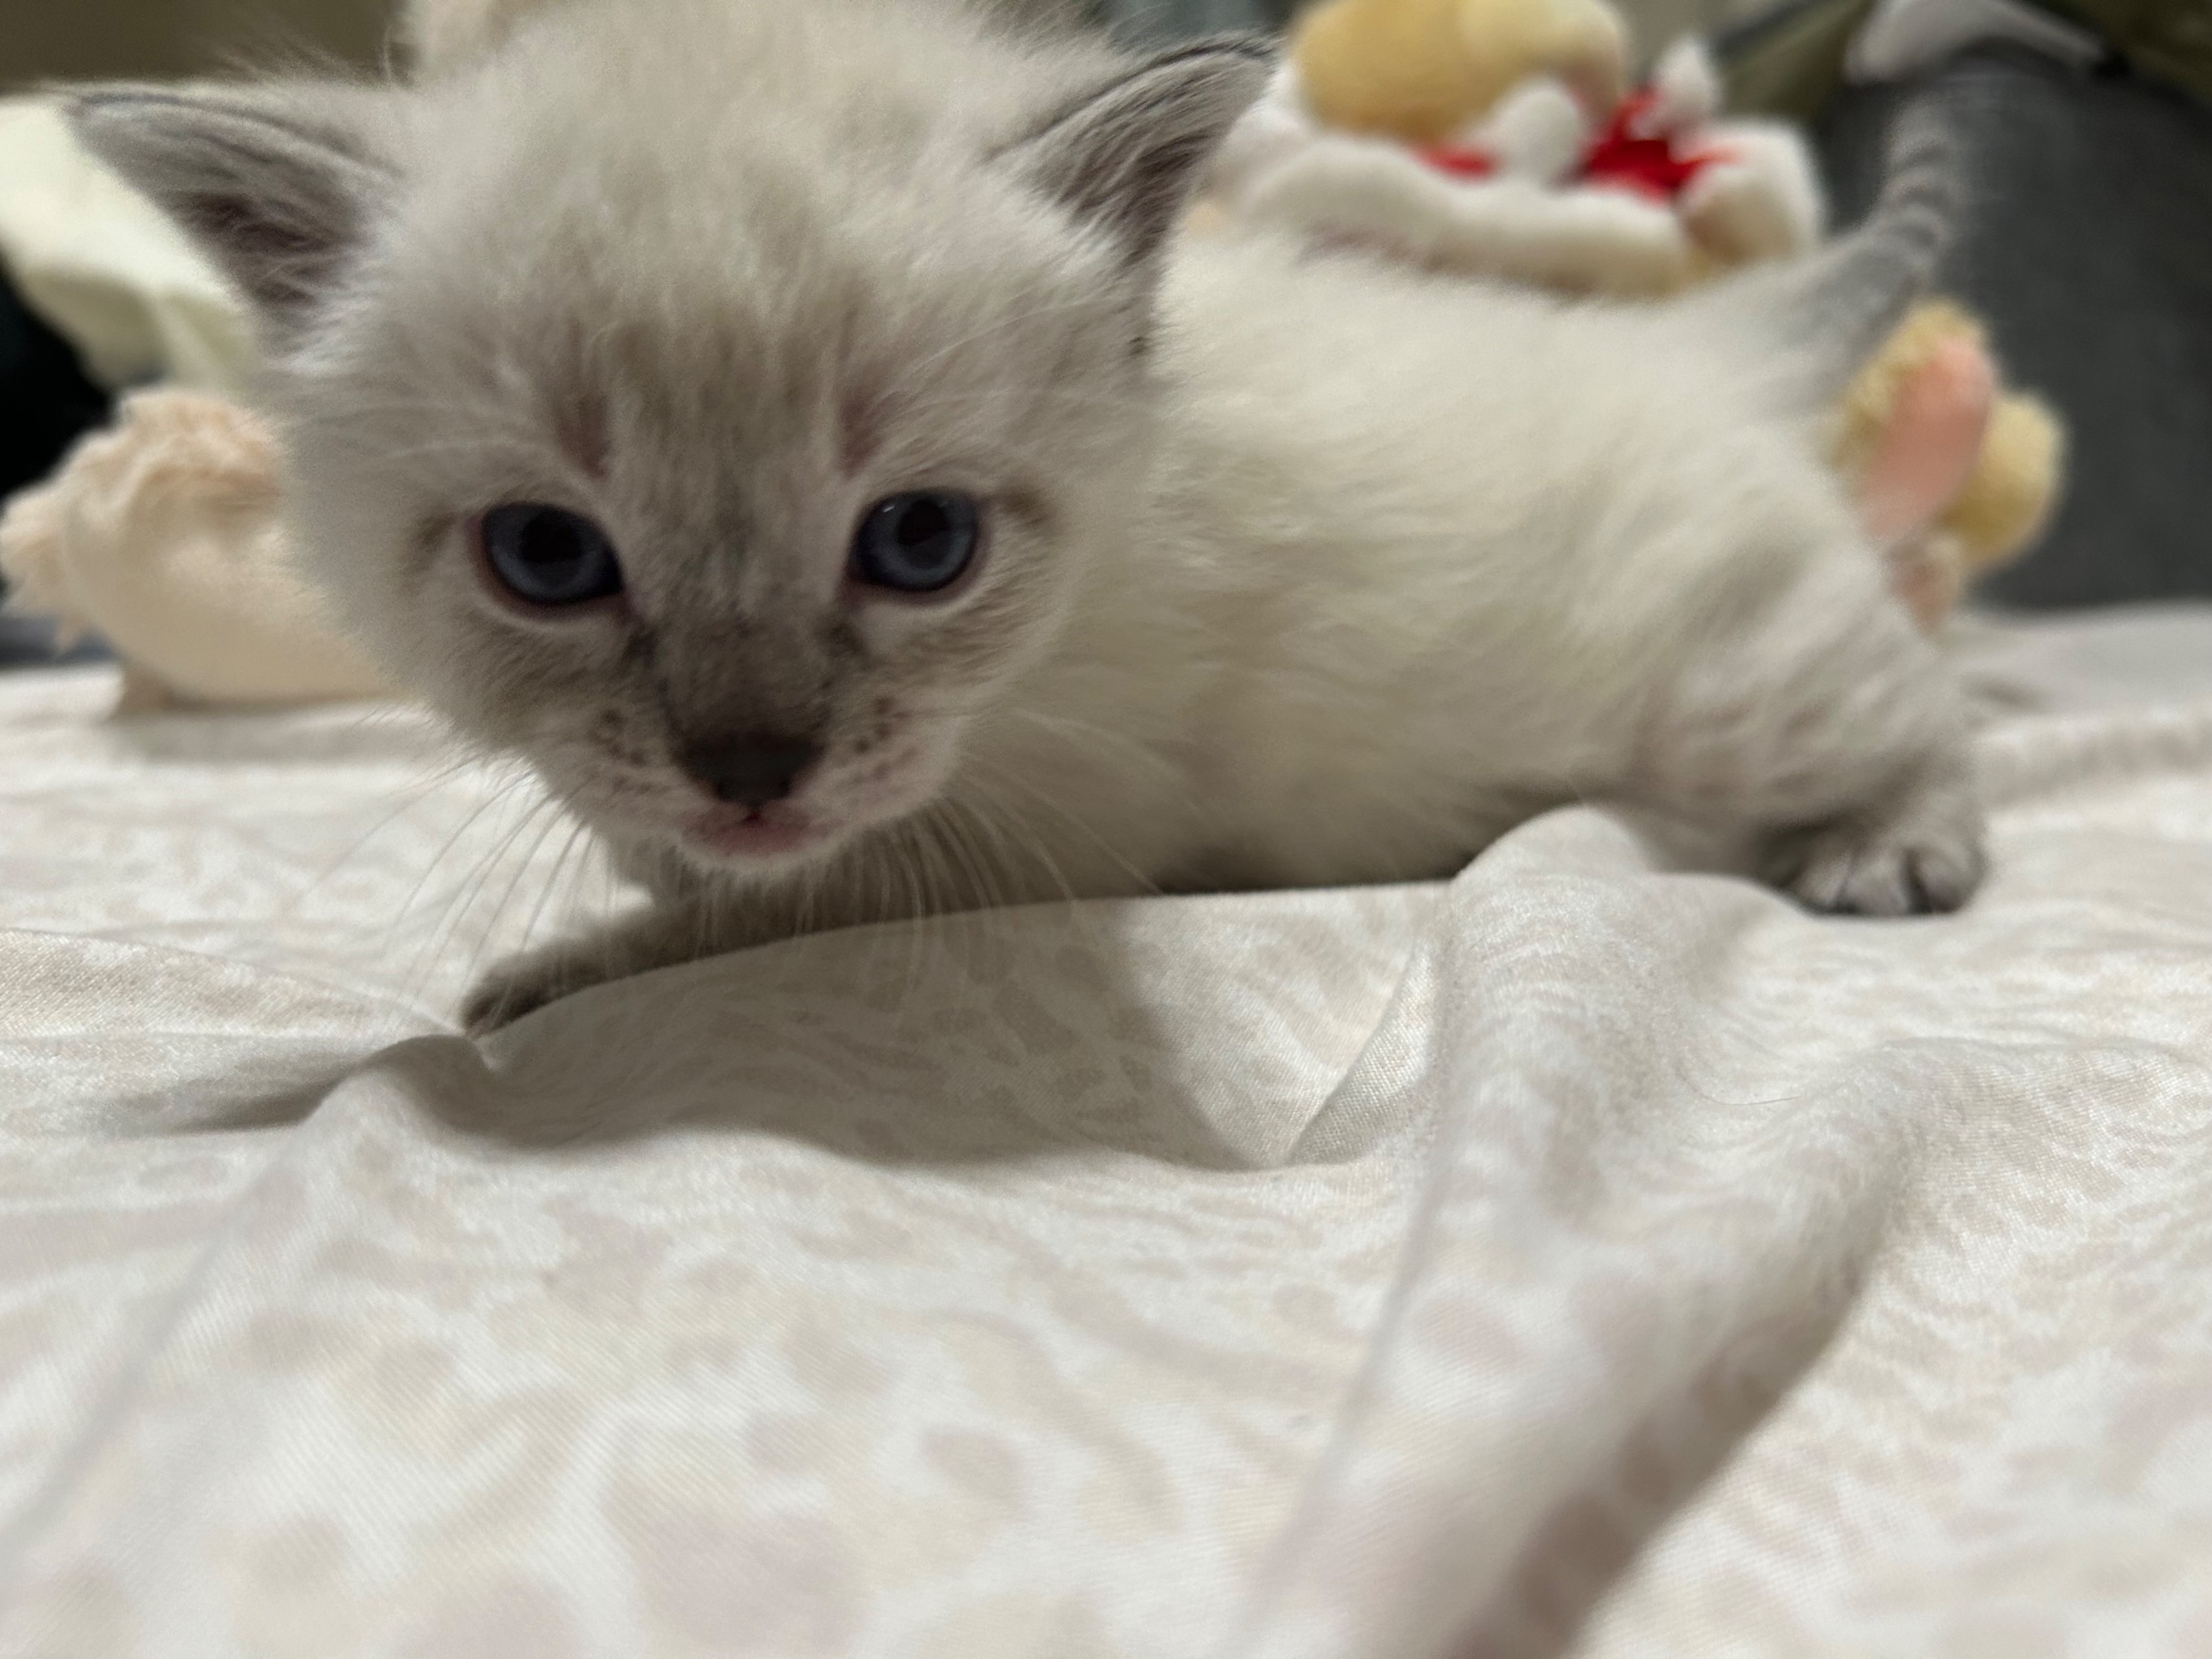 家里的猫生了小猫，想帮它找个新家庭。小猫是白色猫和蓝眼睛。价钱面谈。有兴趣发短信给我 626-620-6282